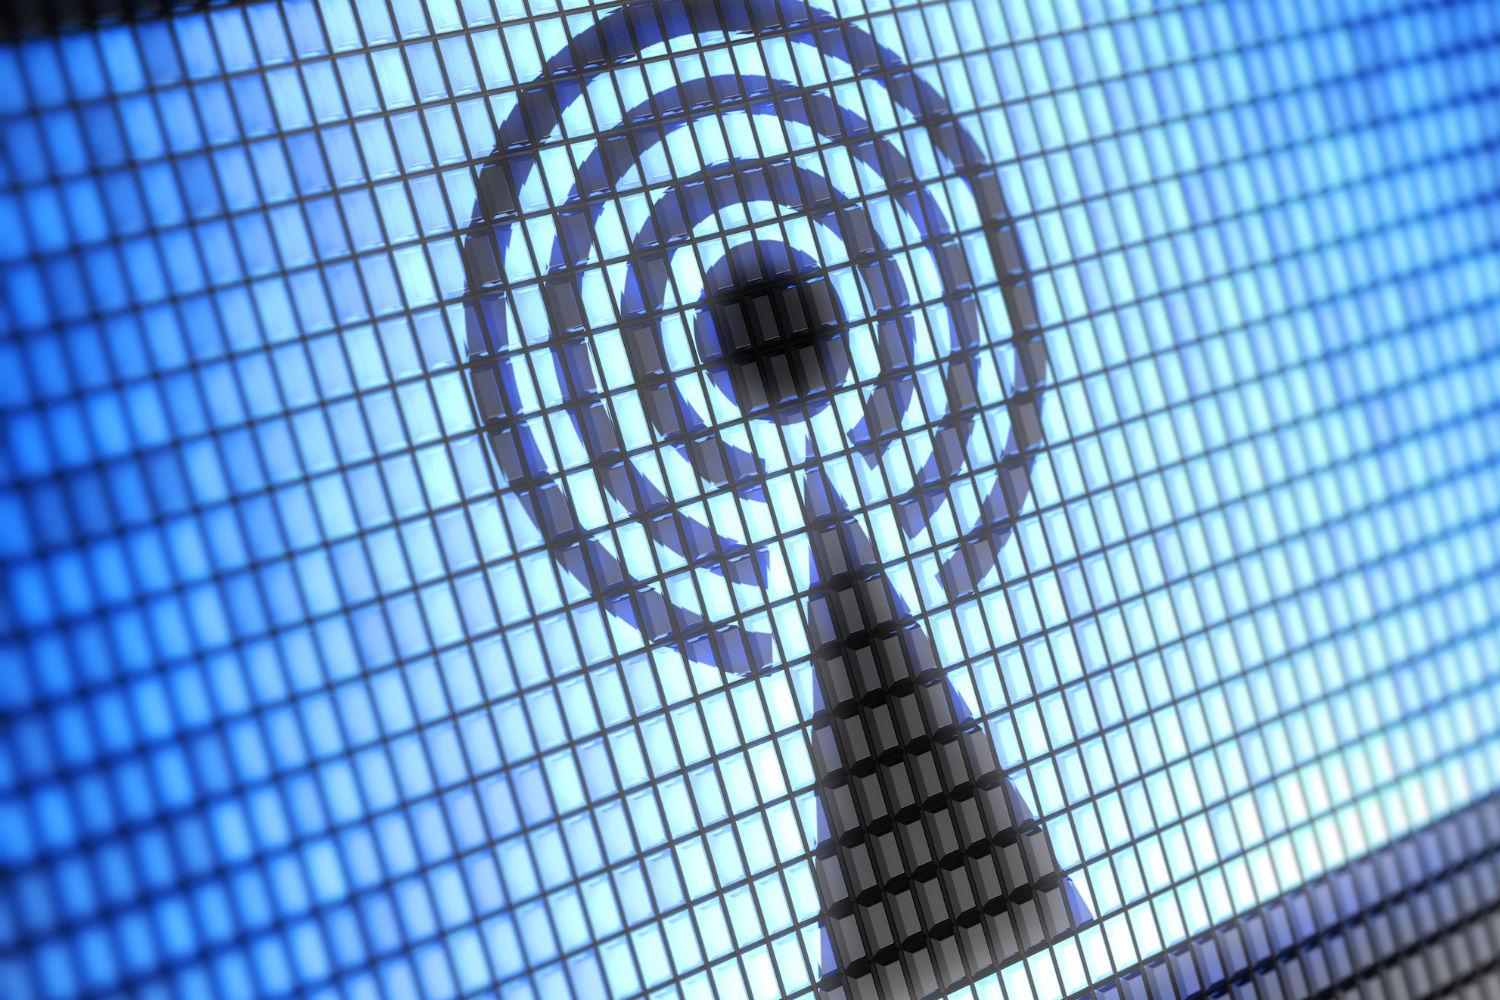 Wi-Fi n, ac, ad, ax… : tout savoir sur le réseau sans fil et ses débits